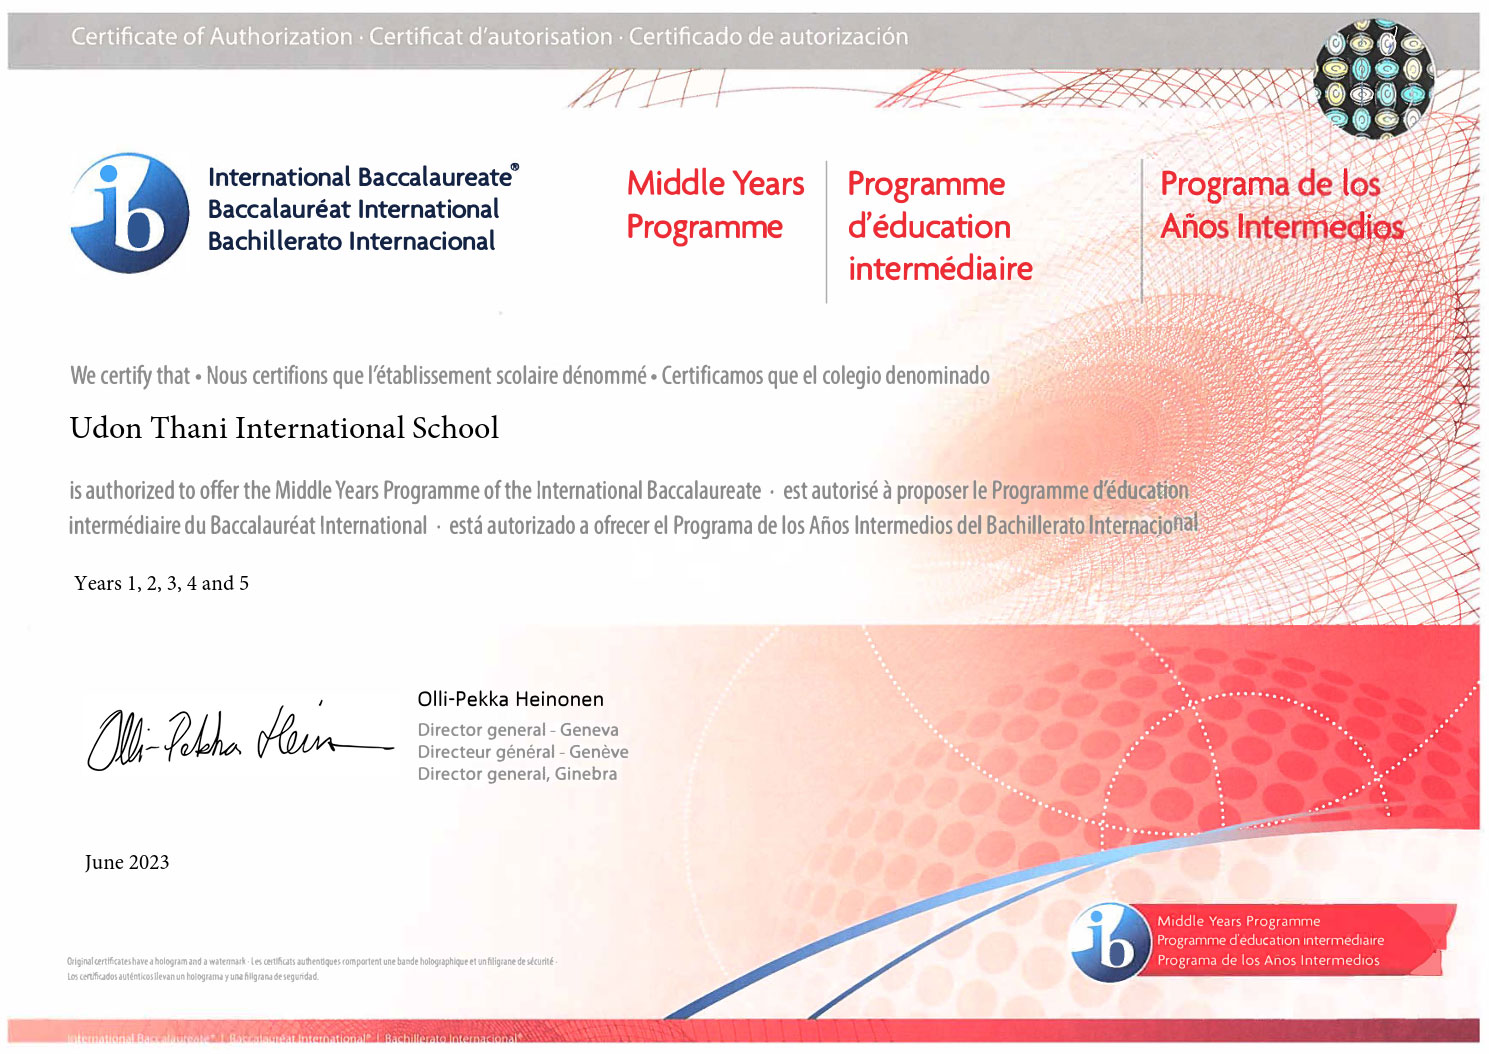 MYP Candidate School Udon Thani International School: An IB World